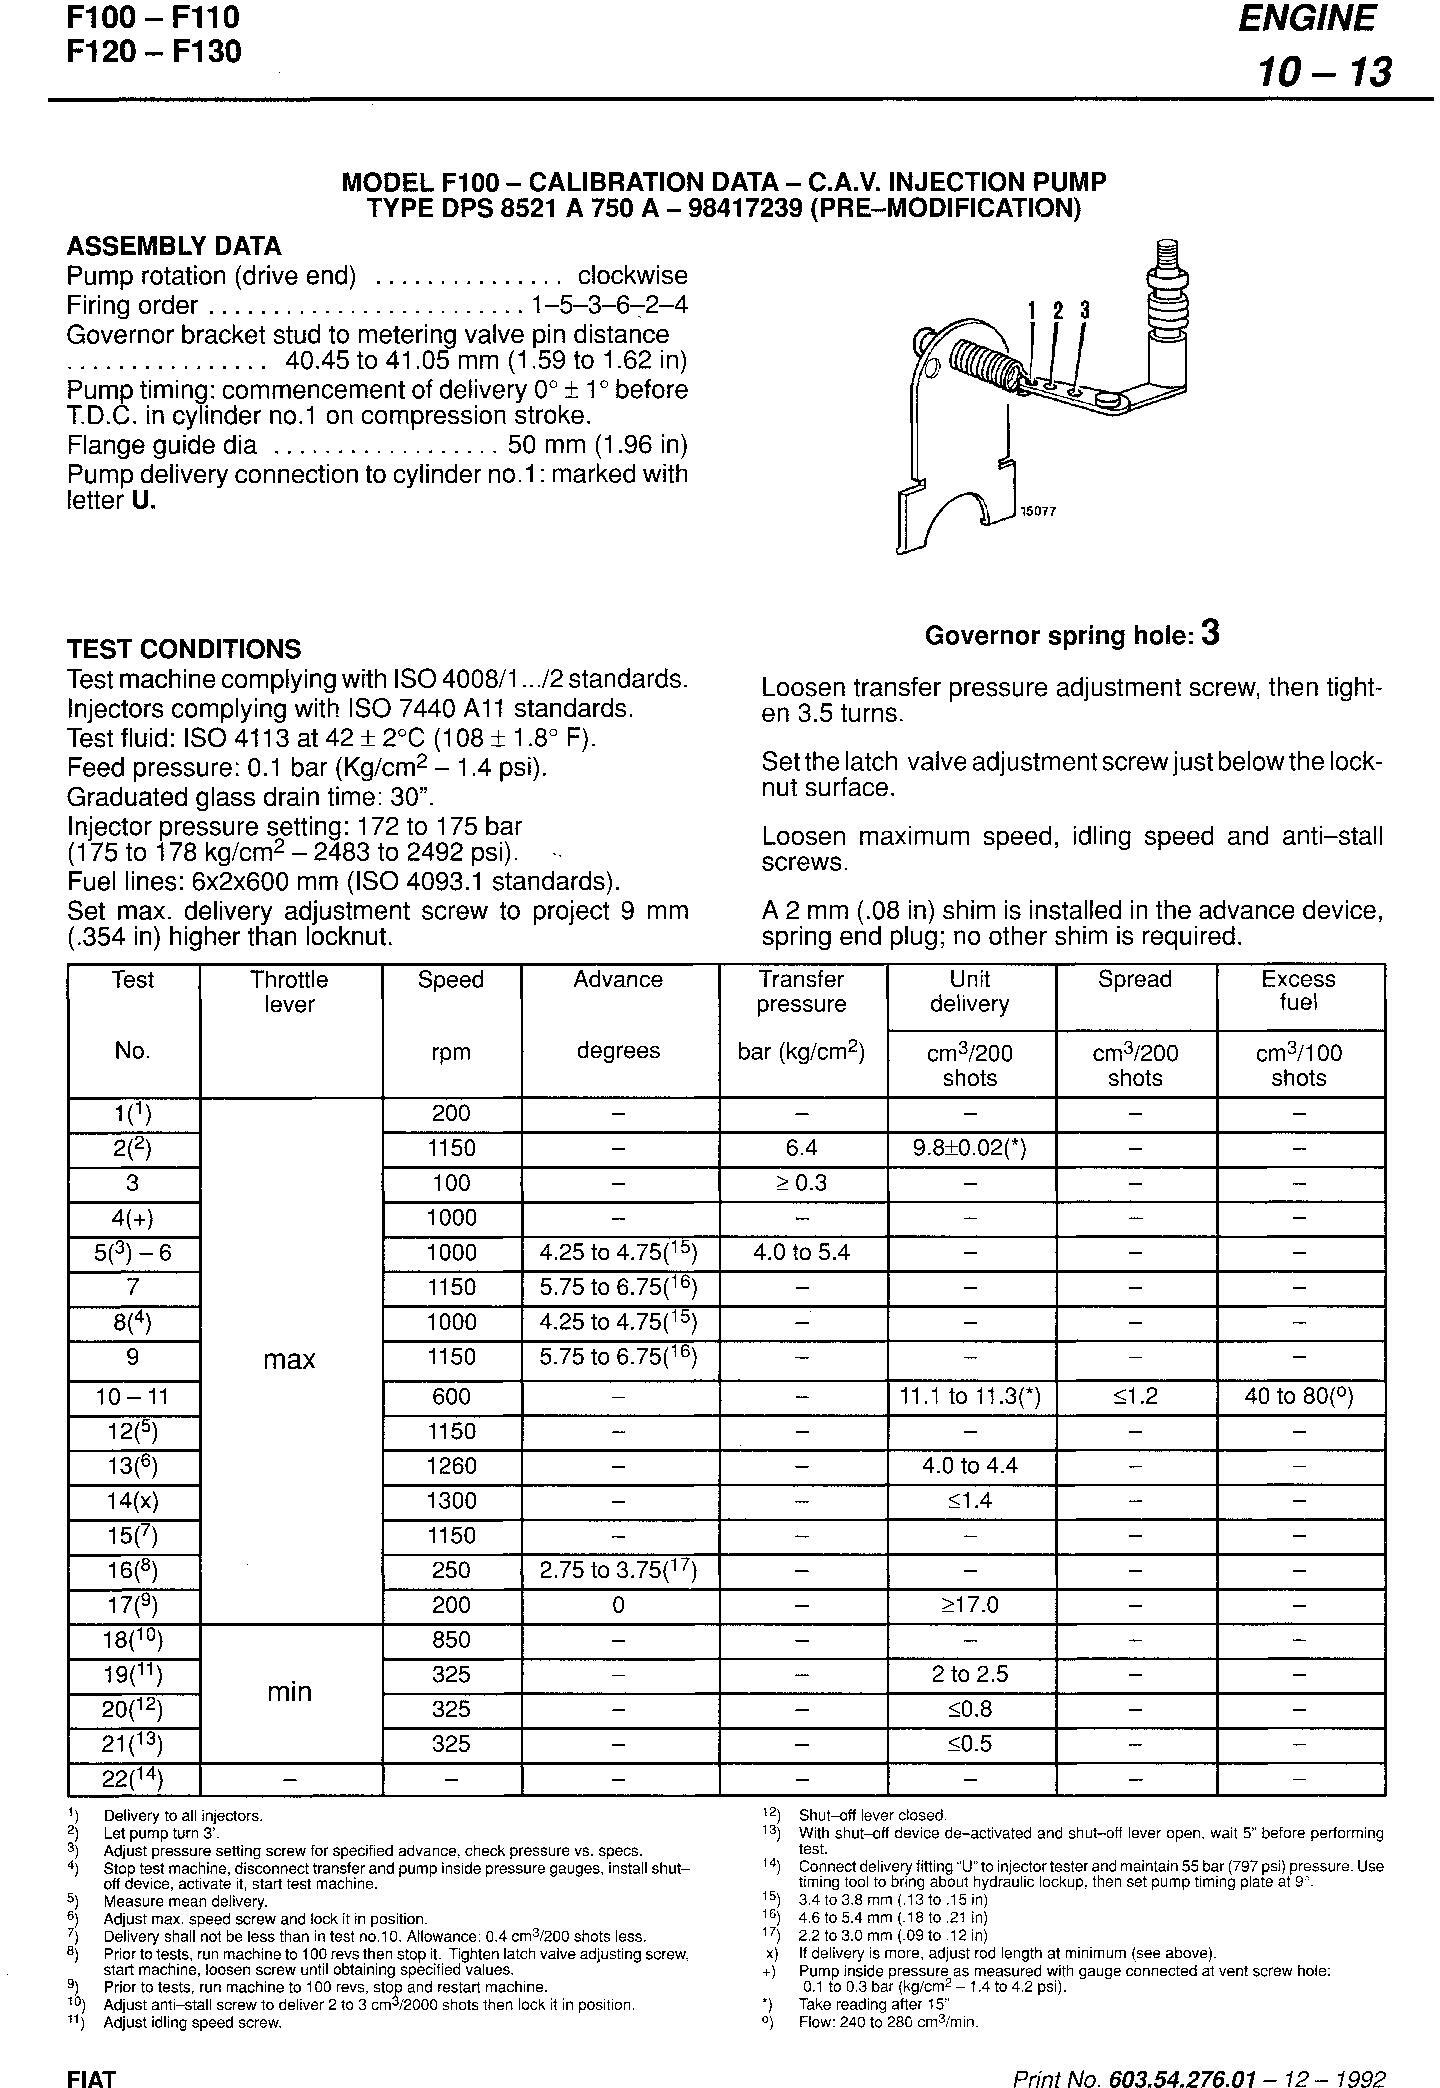 Fiat F100, F110, F120, F130 Turbo Tractor Service Manual (6035427601) - 1